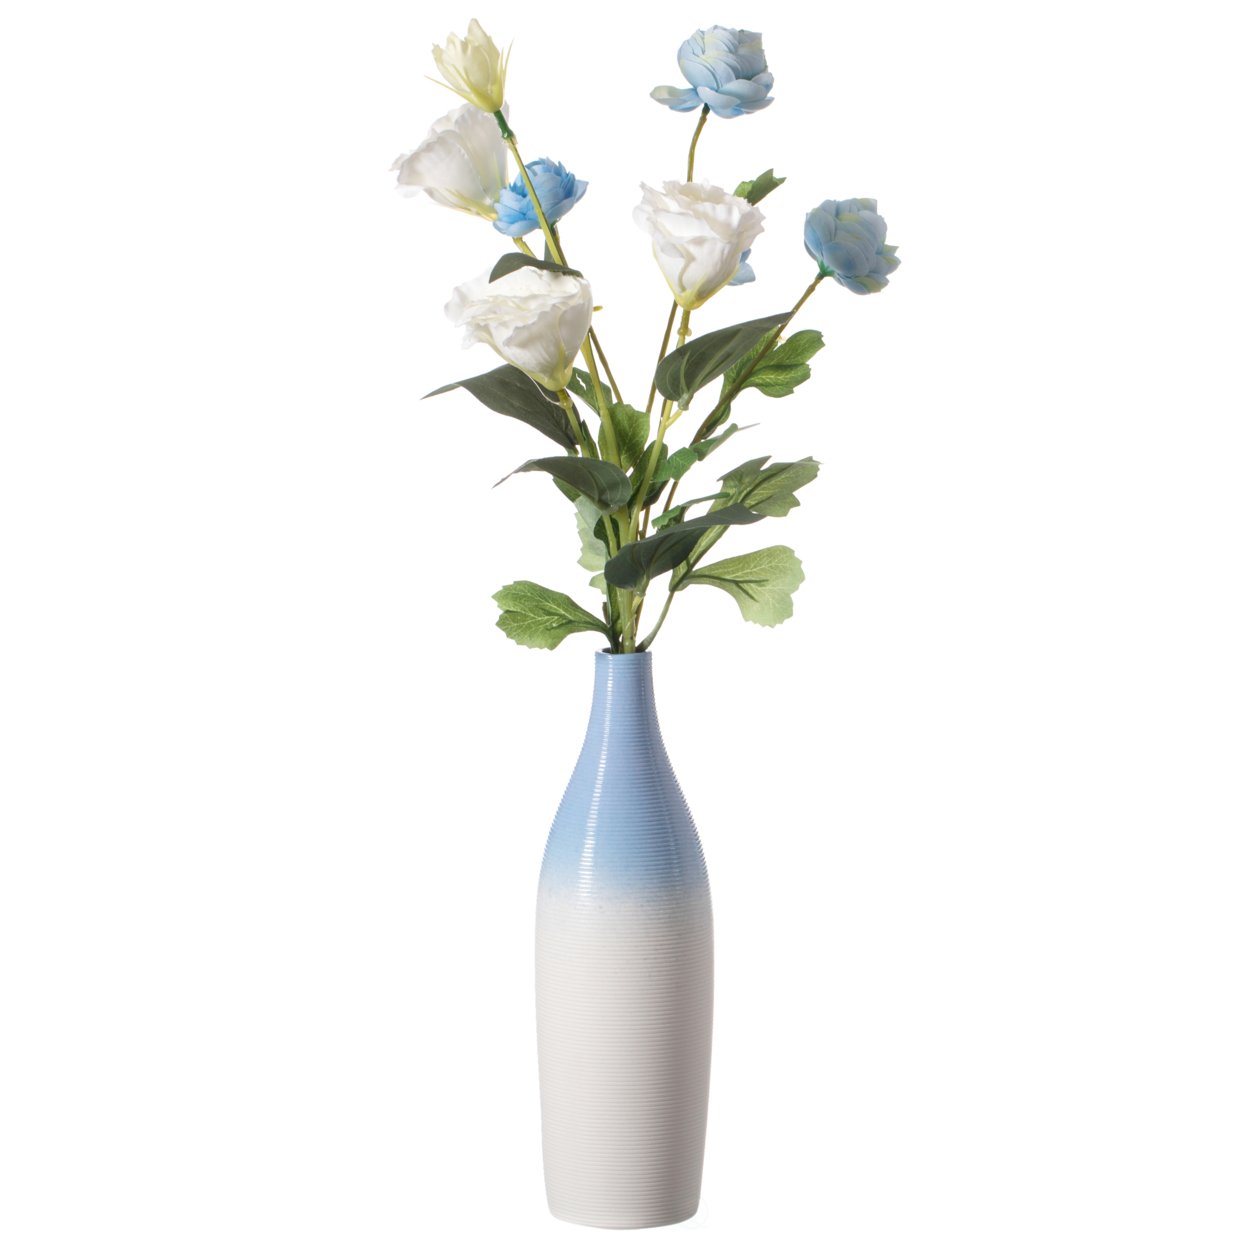 Modern Decorative Ceramic Table Vase Ripped Design Bottle Shape Flower Holder - White